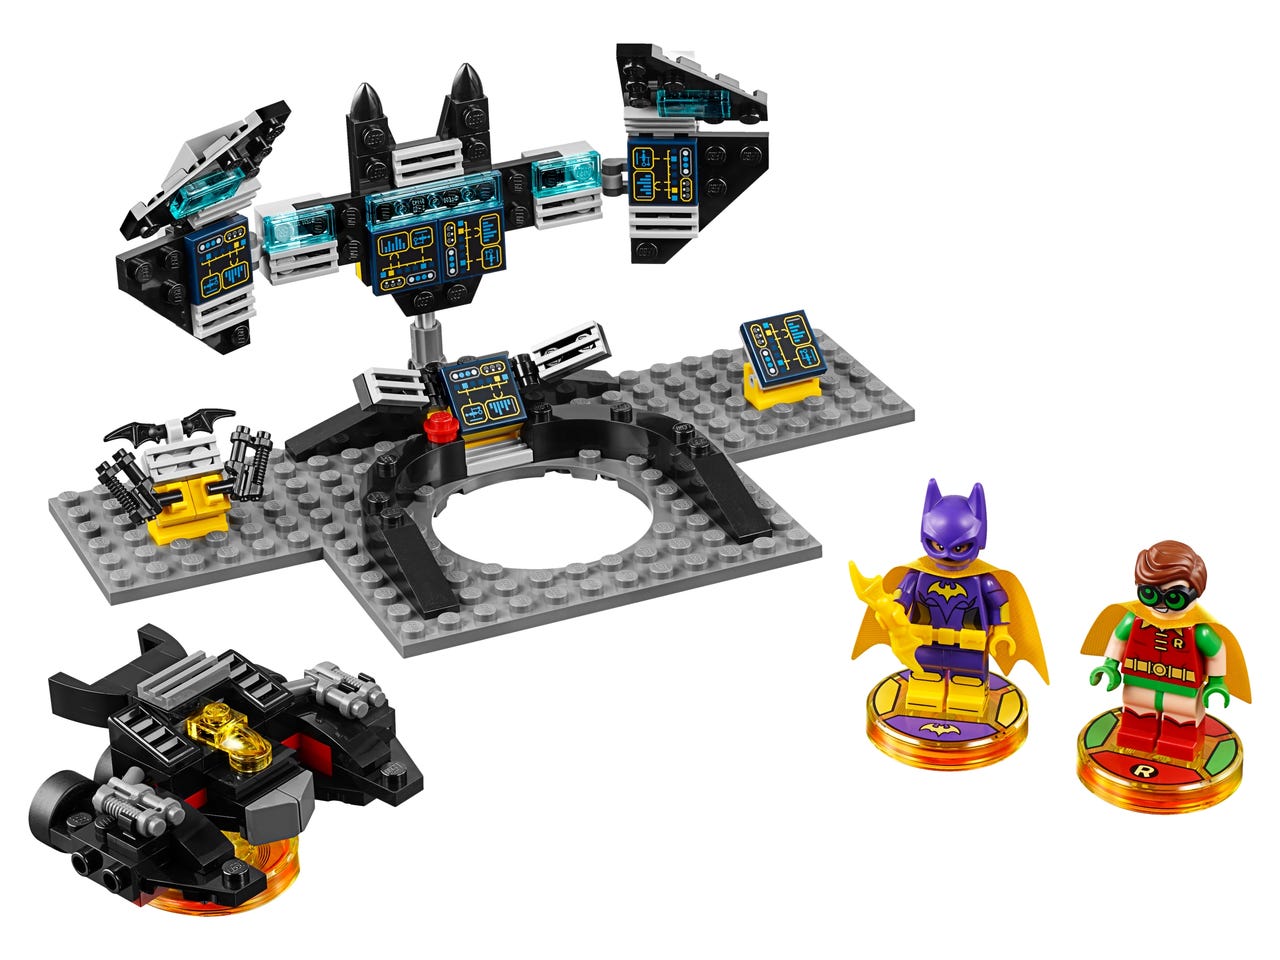 71264 LEGO Dimension - The LEGO Batman Movie - Story Pack: The LEGO Batman Movie